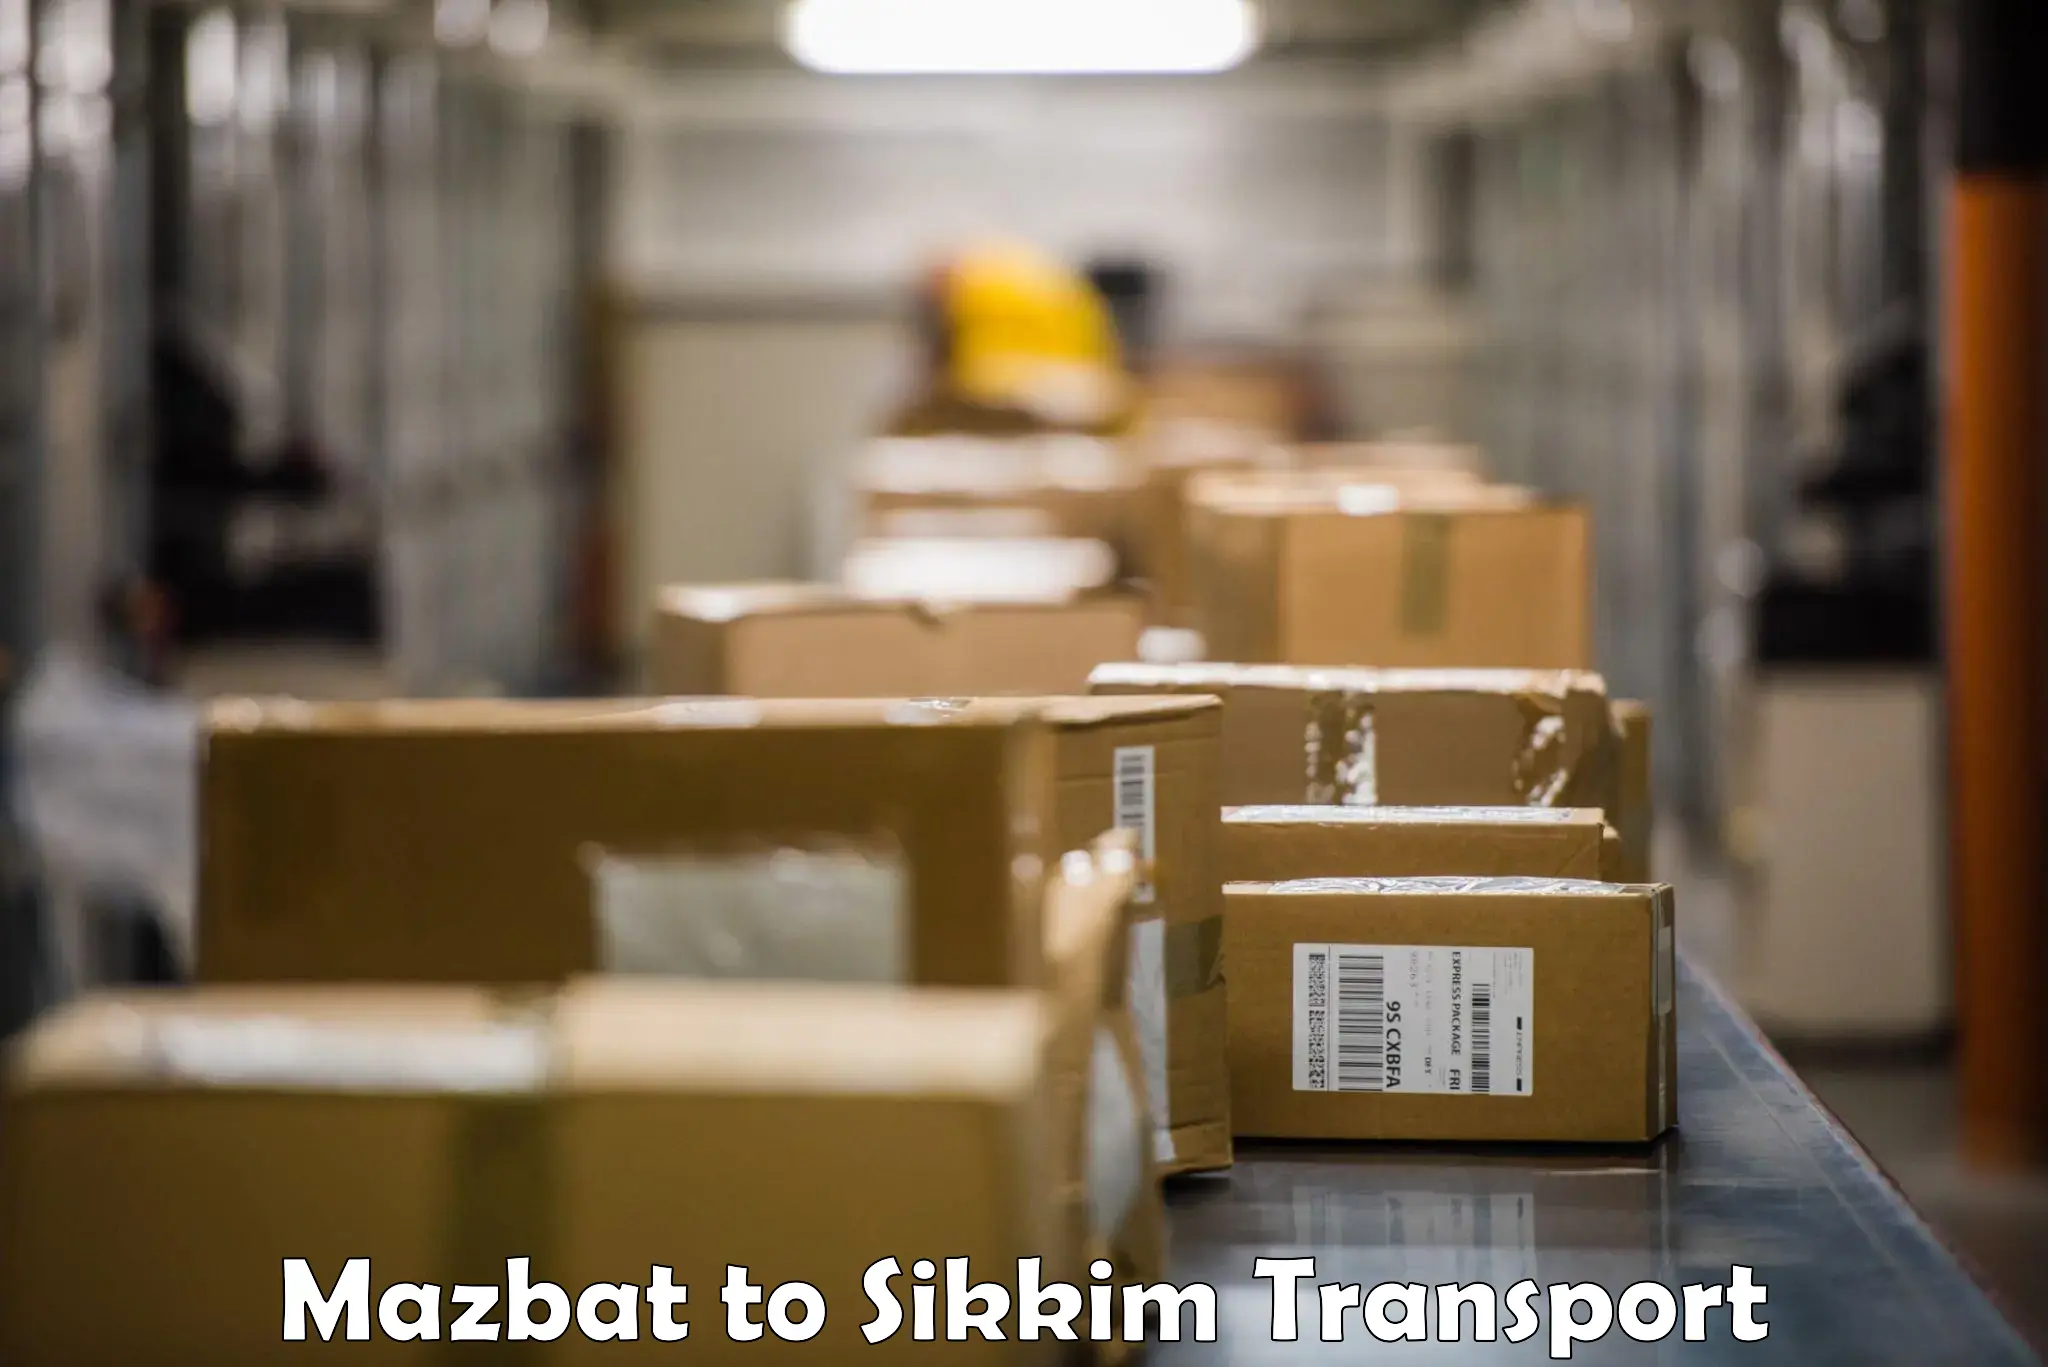 Nationwide transport services Mazbat to Sikkim